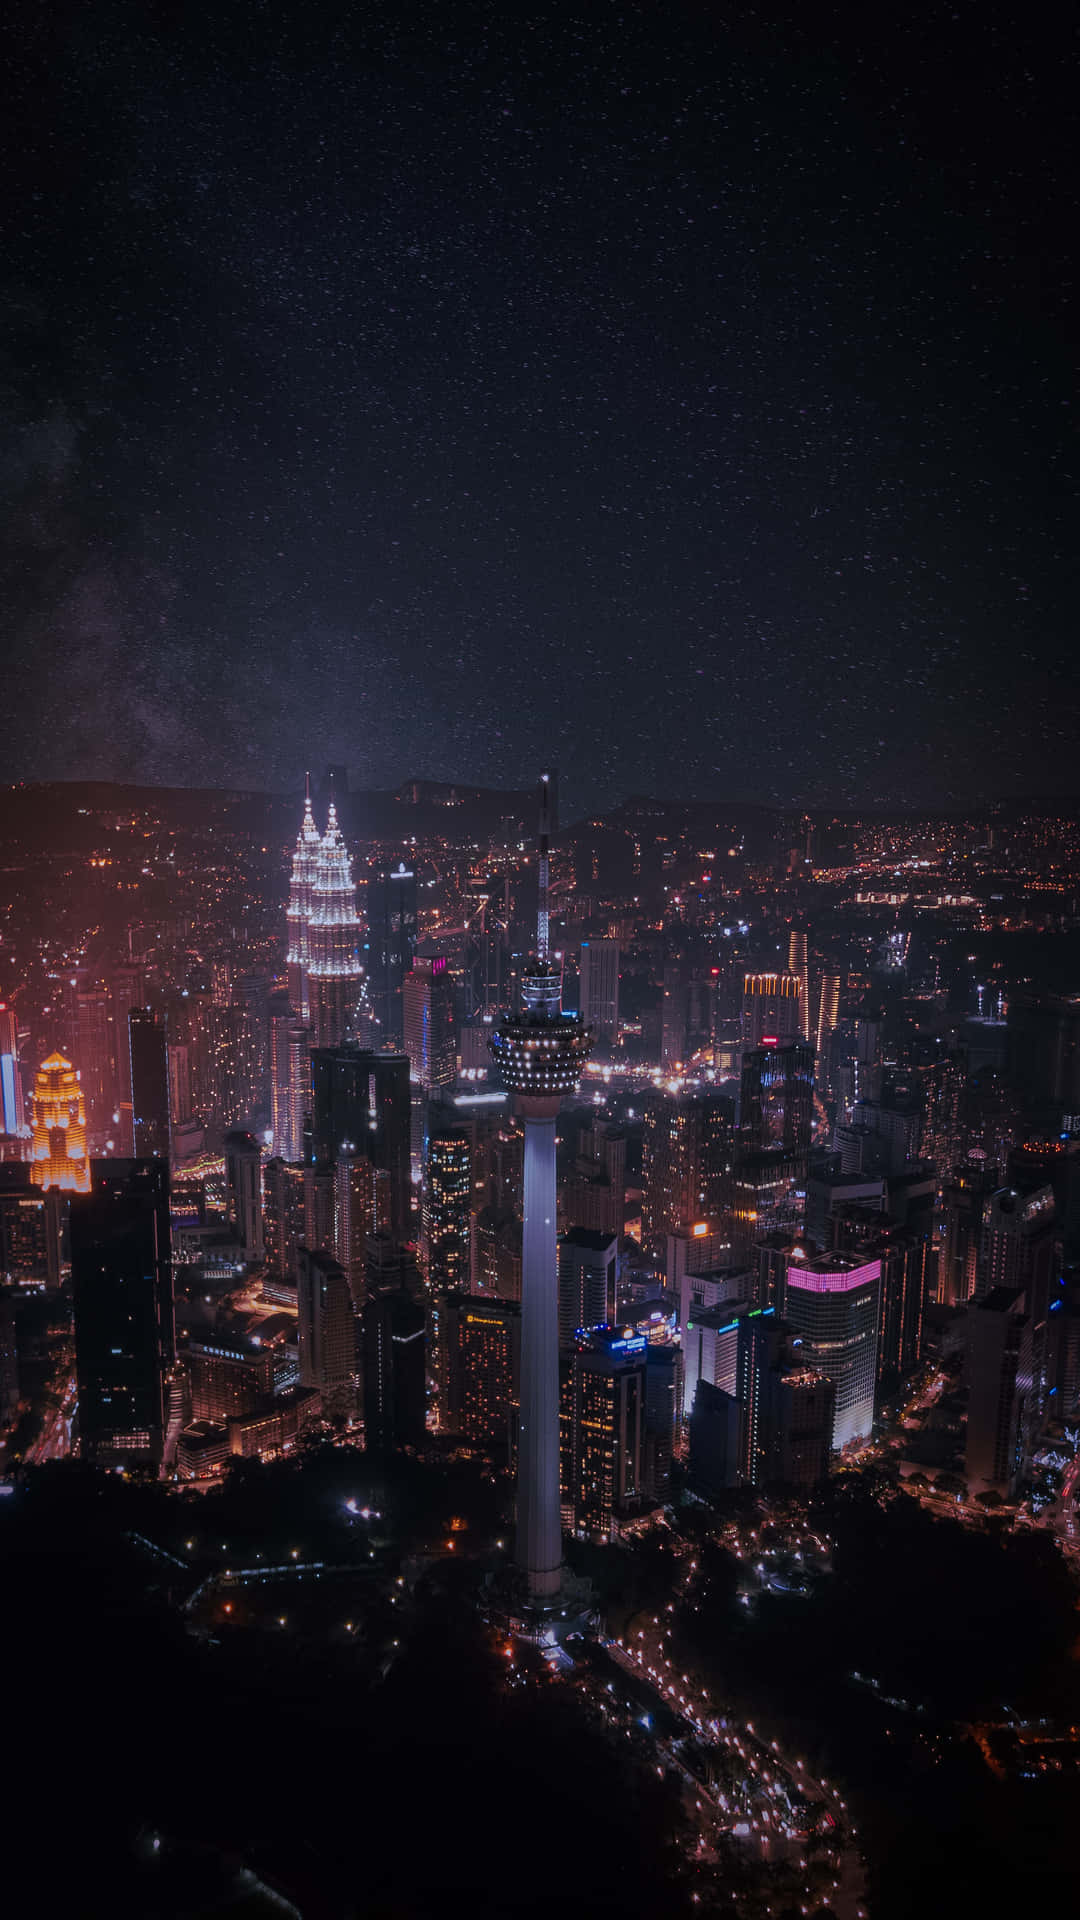 Imágenesnocturnas De La Ciudad De Kuala Lumpur.